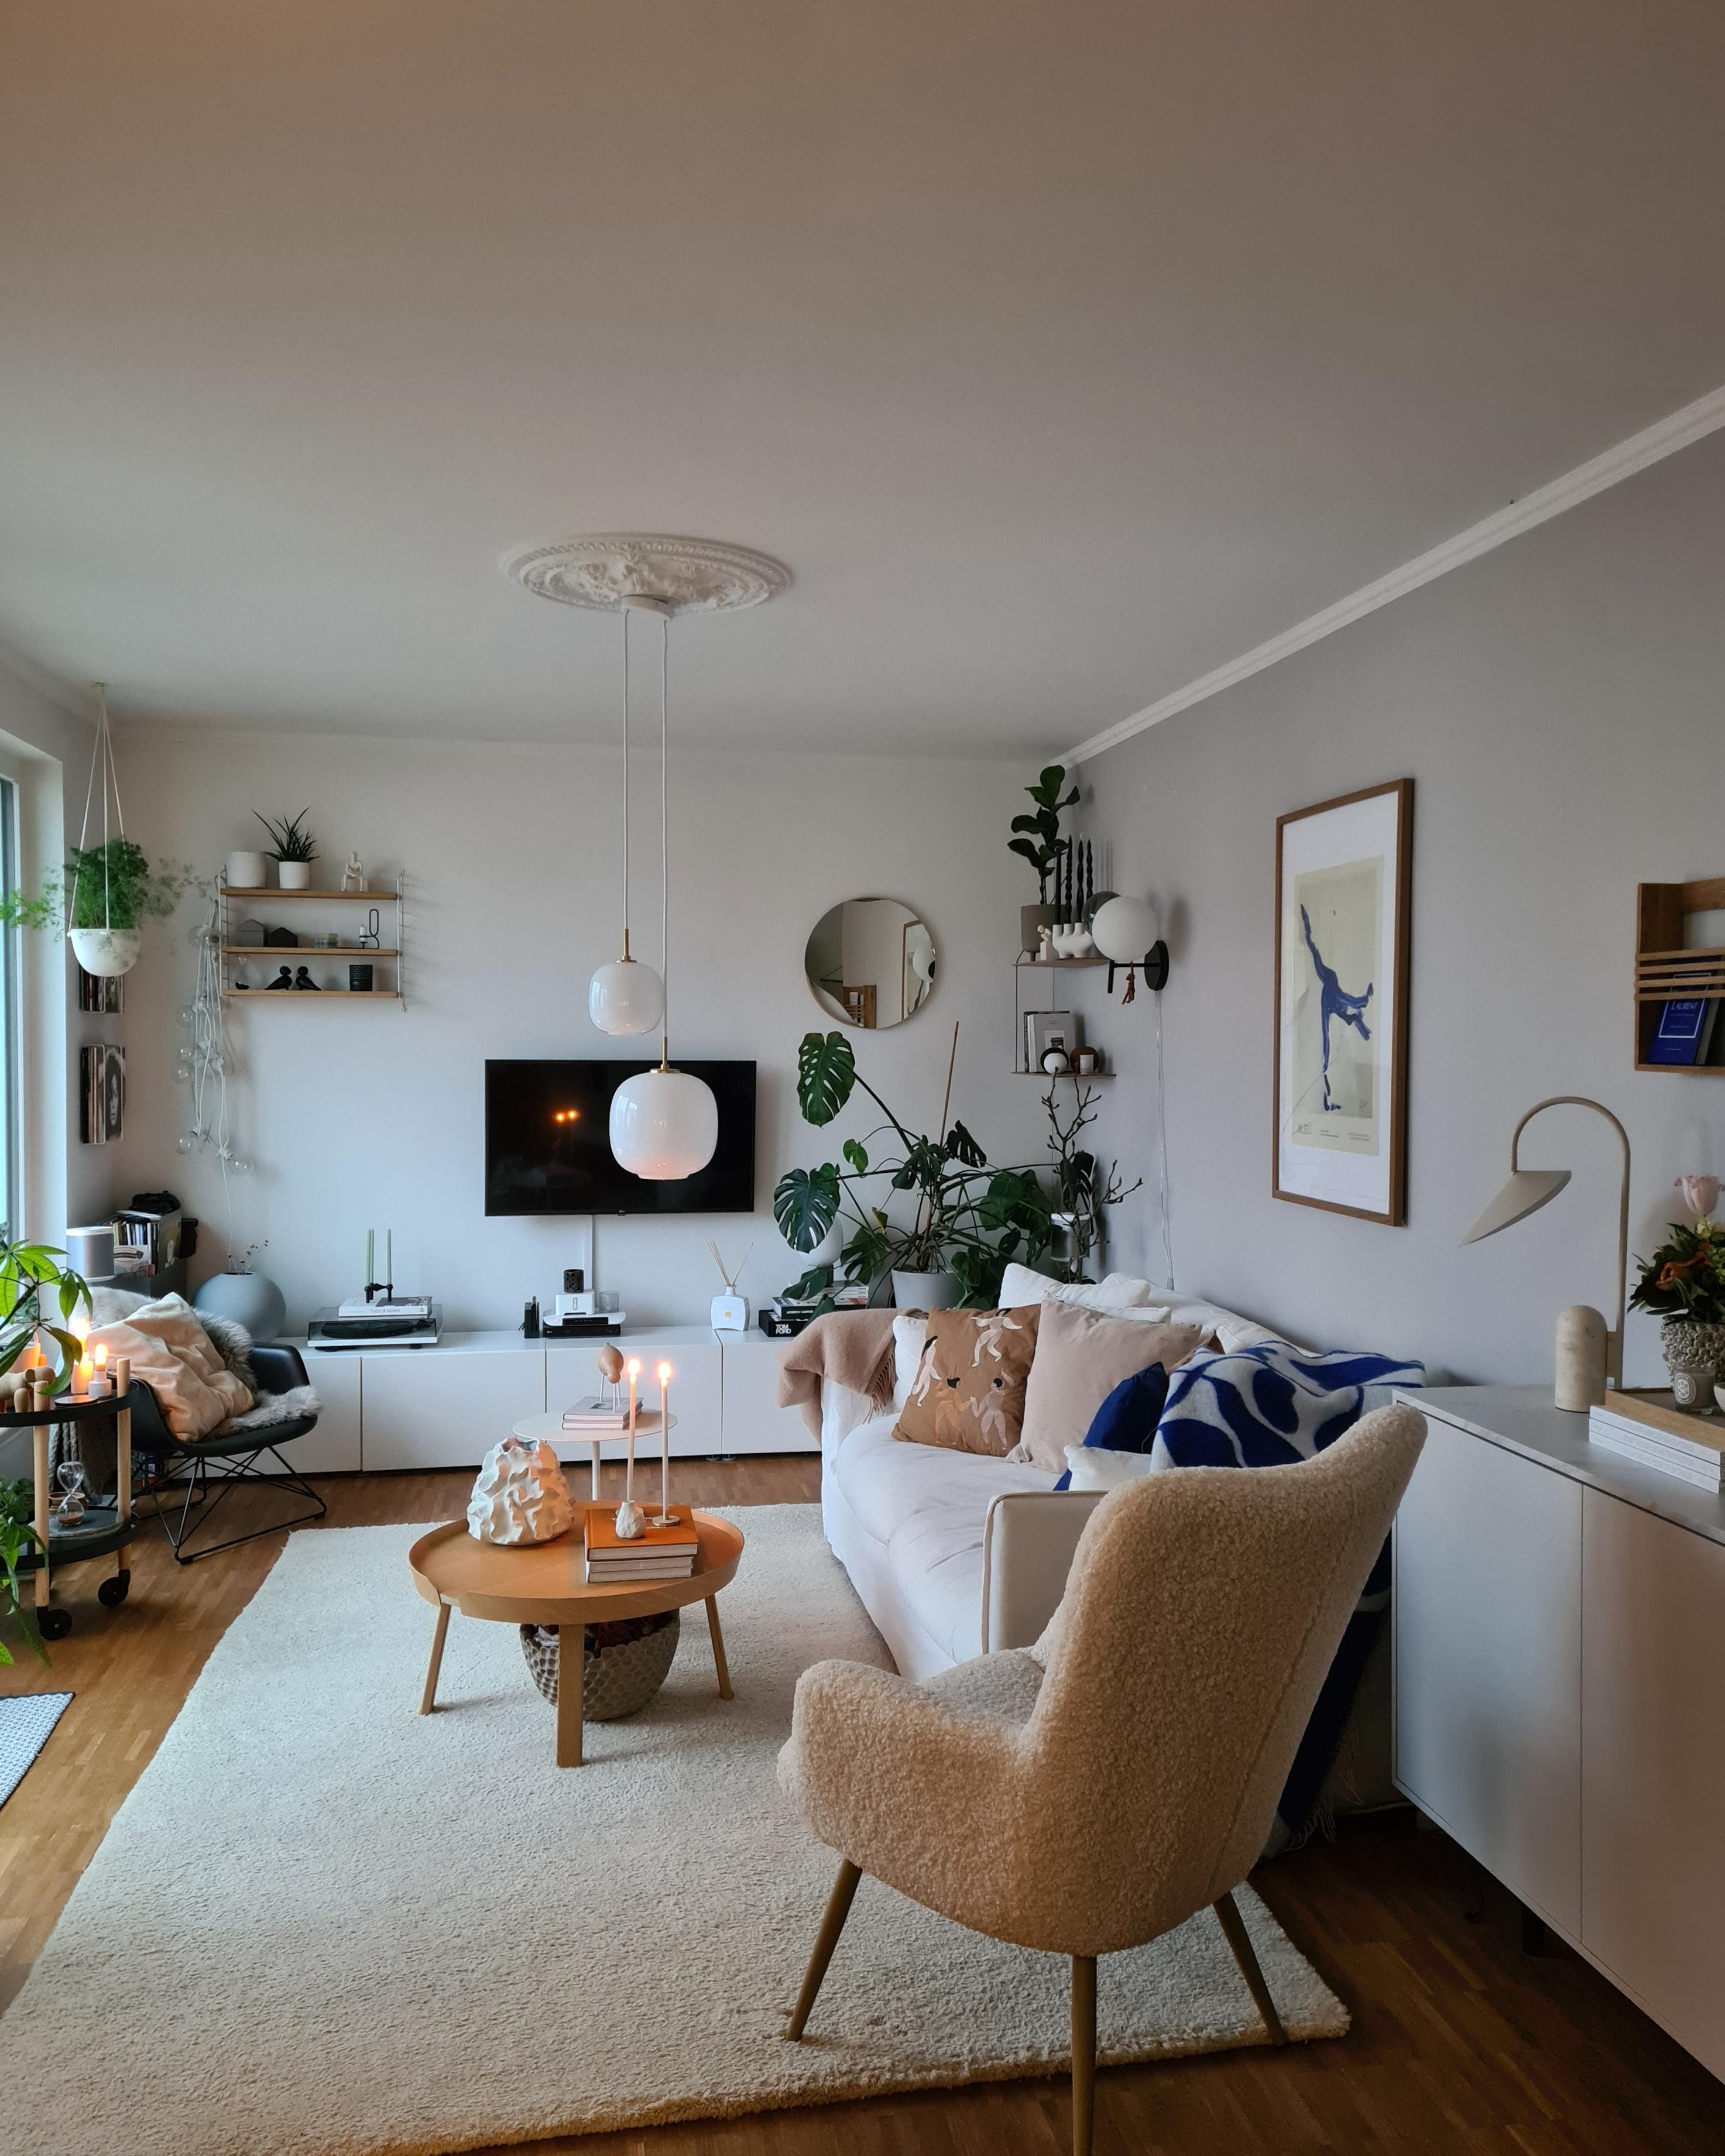 Schönes Wochenende 

#wohnzimmerinspo #skandinavischwohnen #einrichtungsideen #couchstyle #wohnzimmer 